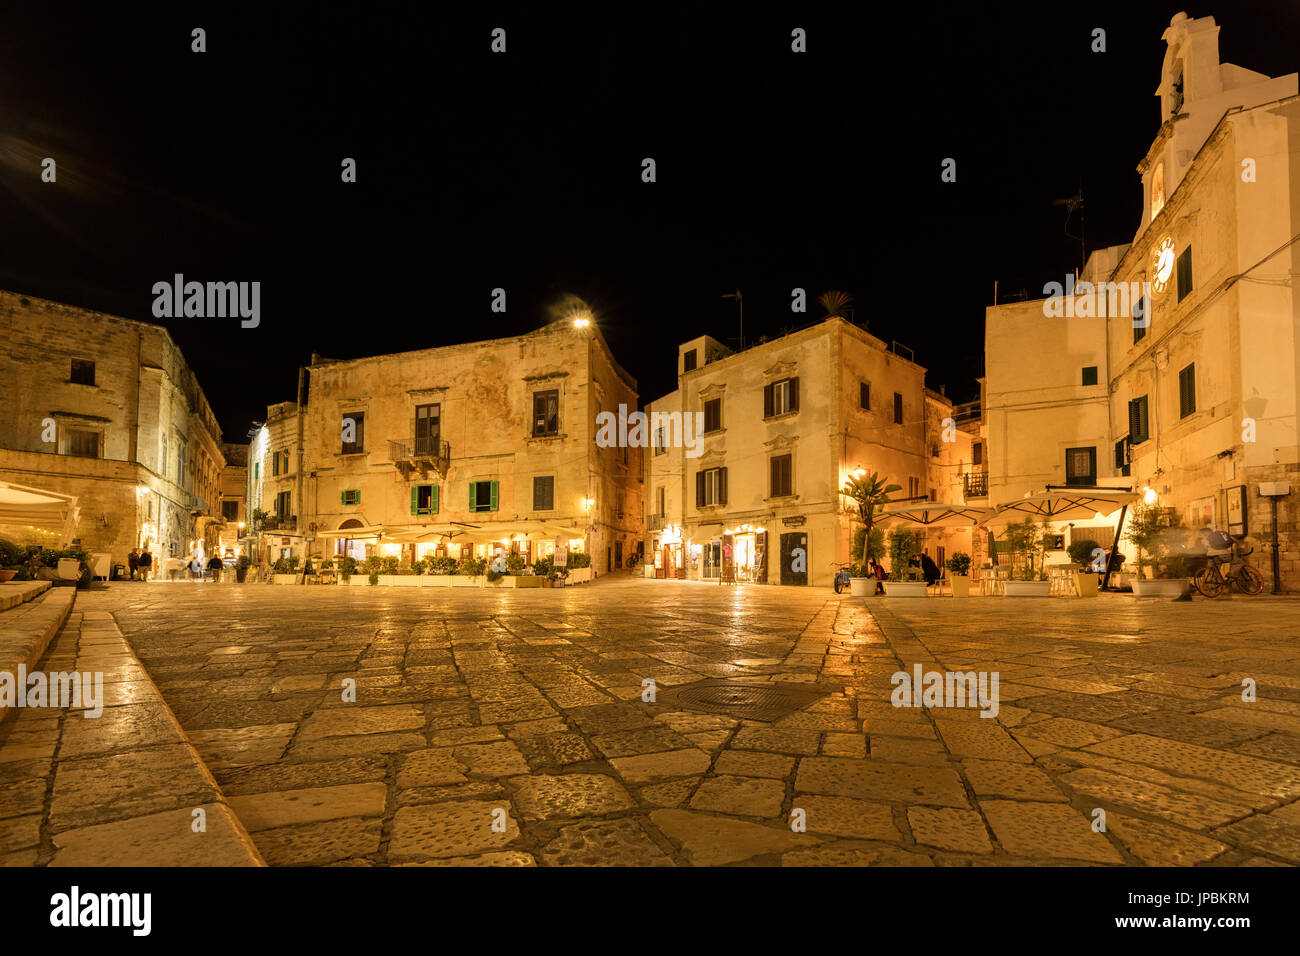 Vista nocturna de los edificios históricos y plazas de la ciudad vieja Polignano a Mare Provincia de Bari, Apulia Italia Europa Foto de stock